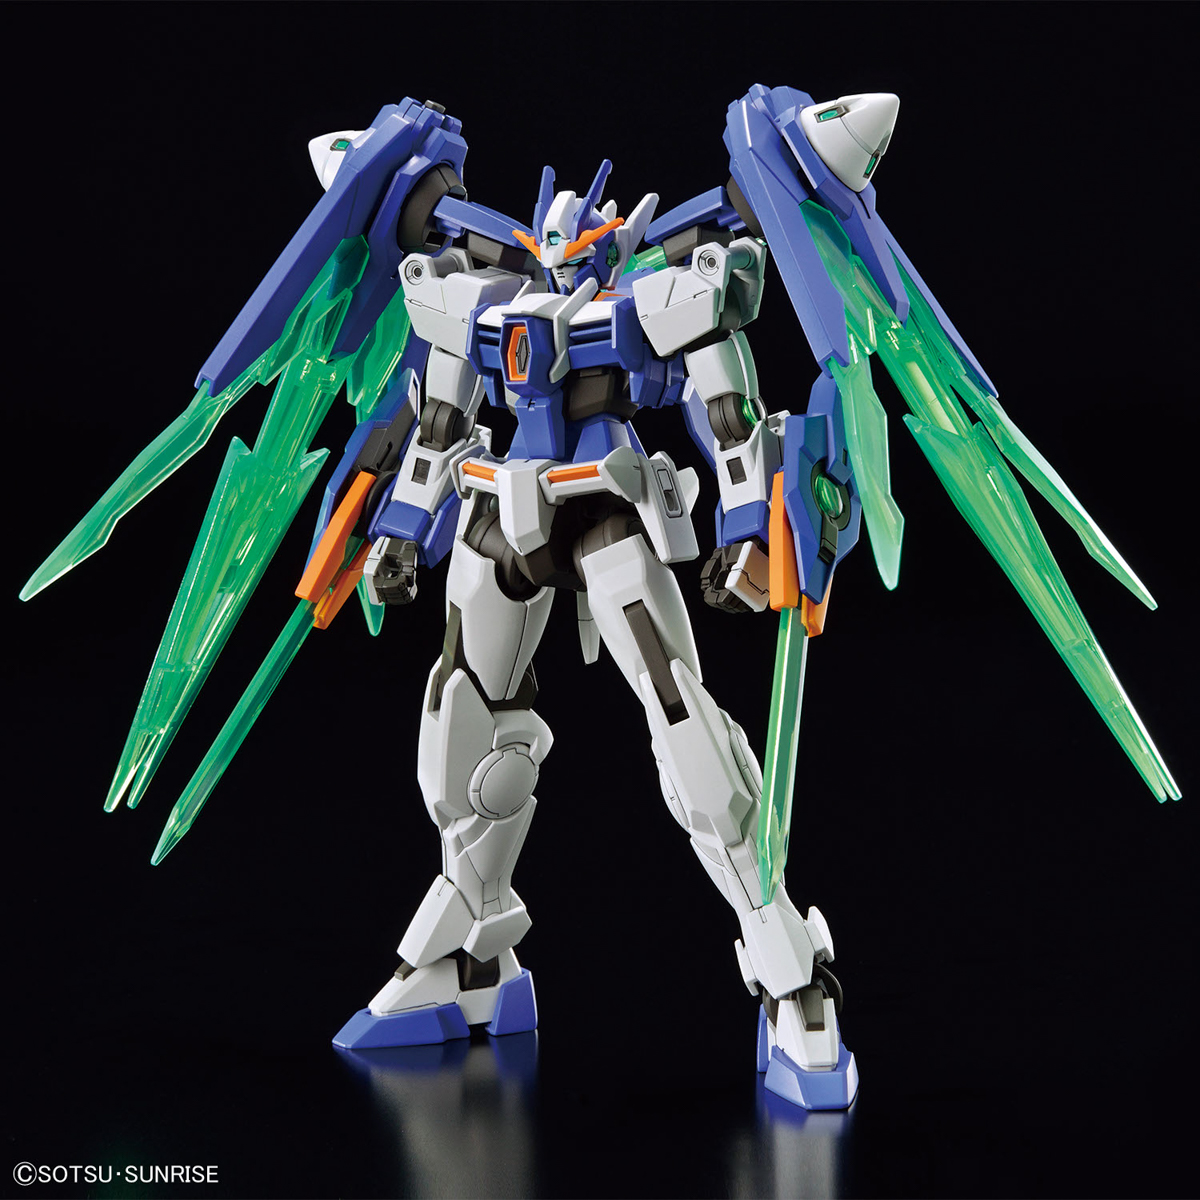 Gundam 1/144 HGBM #05 GN-0000DVR/II 00 Diver Arc Model Kit